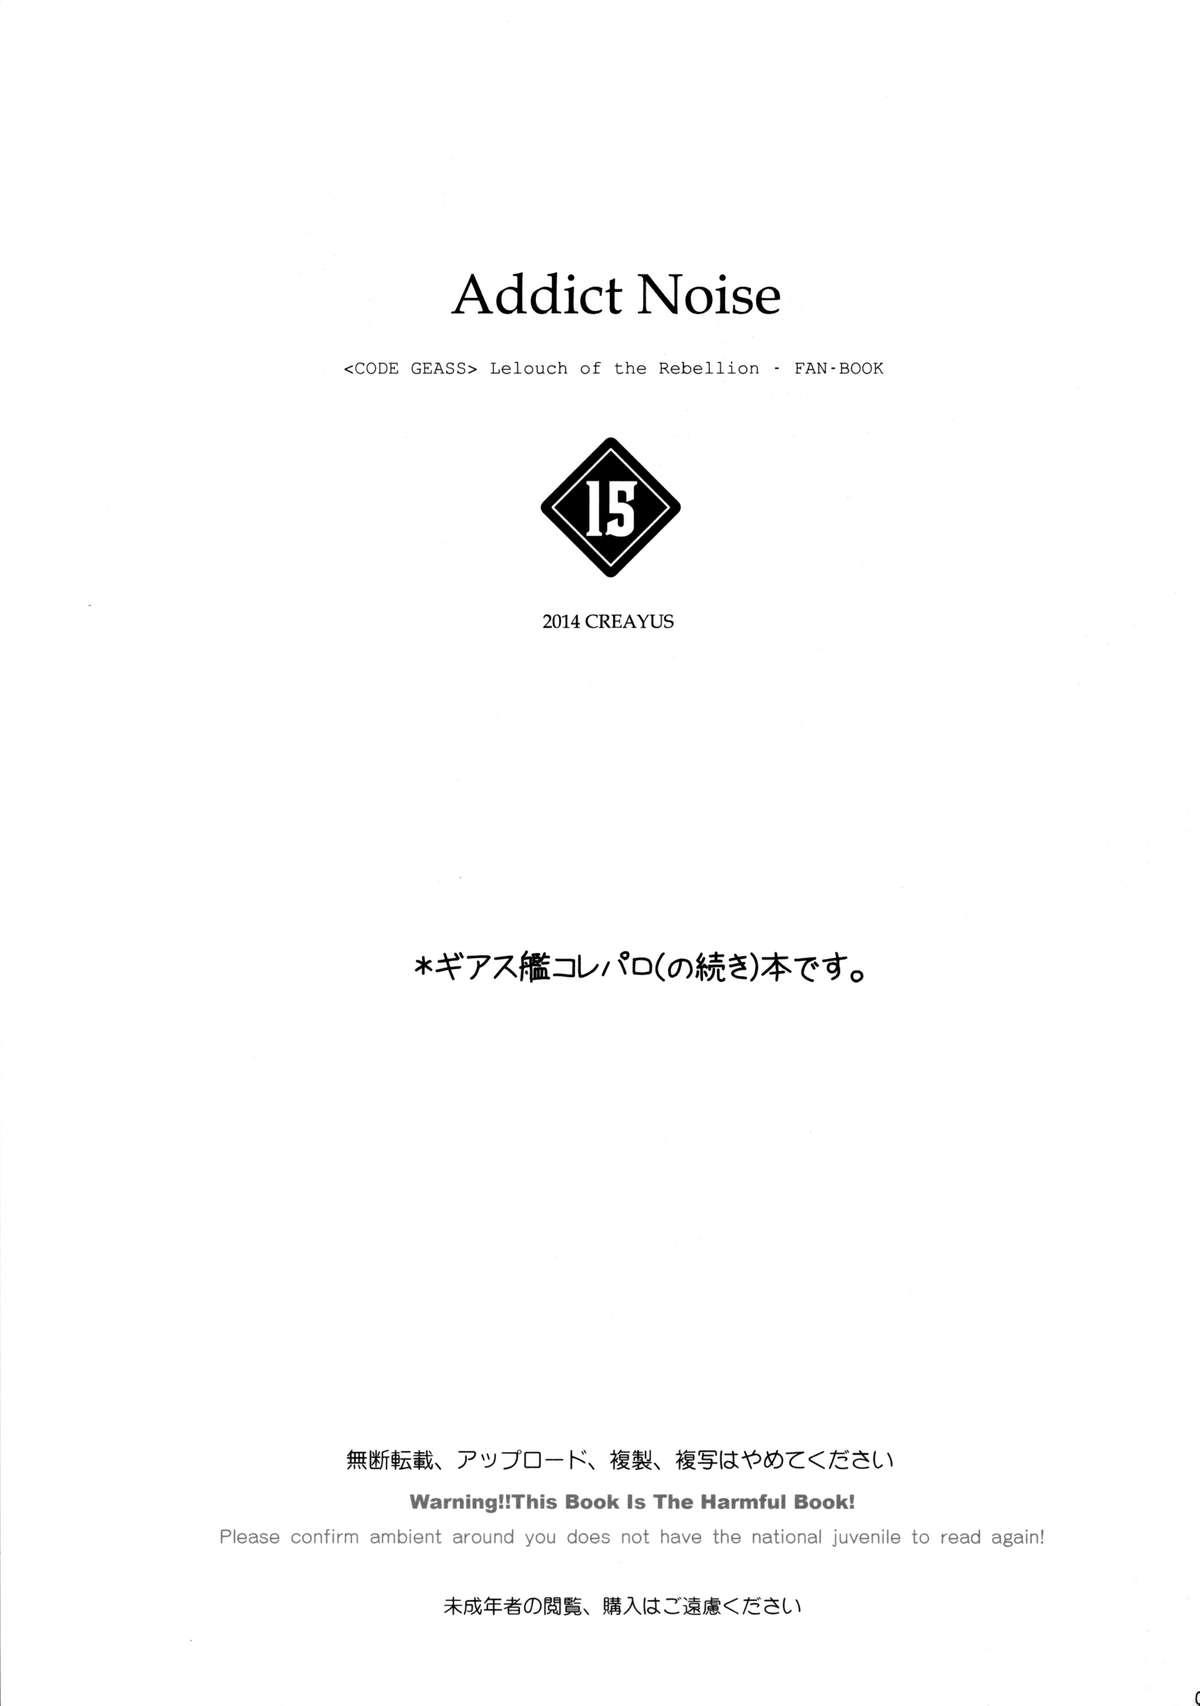 ADDICT NOISE 4